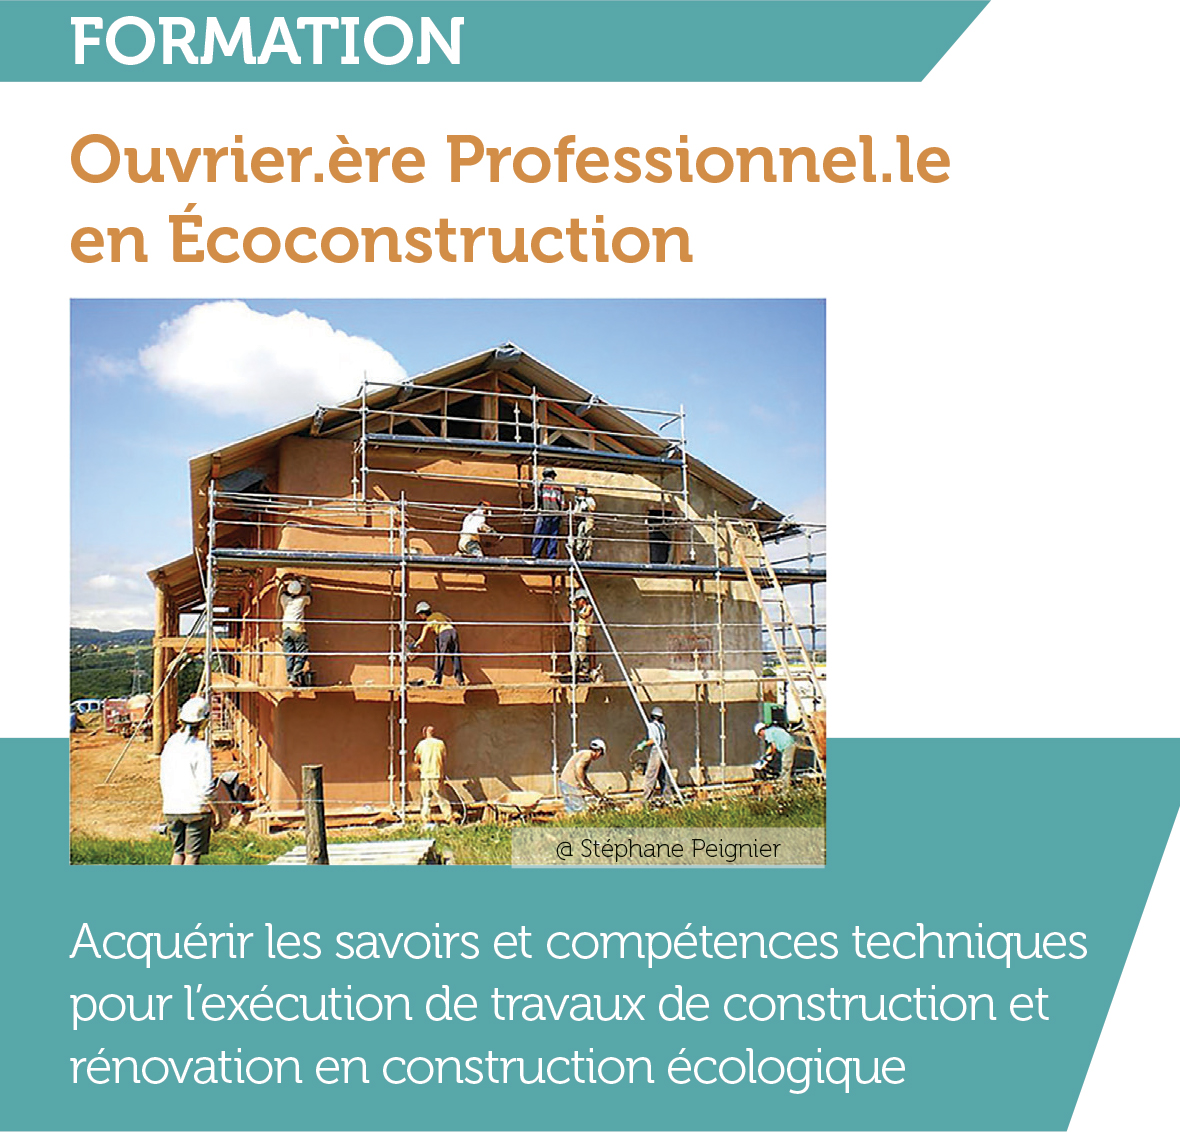 Formation certifiante « Ouvrier.ère Professionnel.le en Ecoconstruction » au CNCP-Feuillette – Montargis (FR-45)